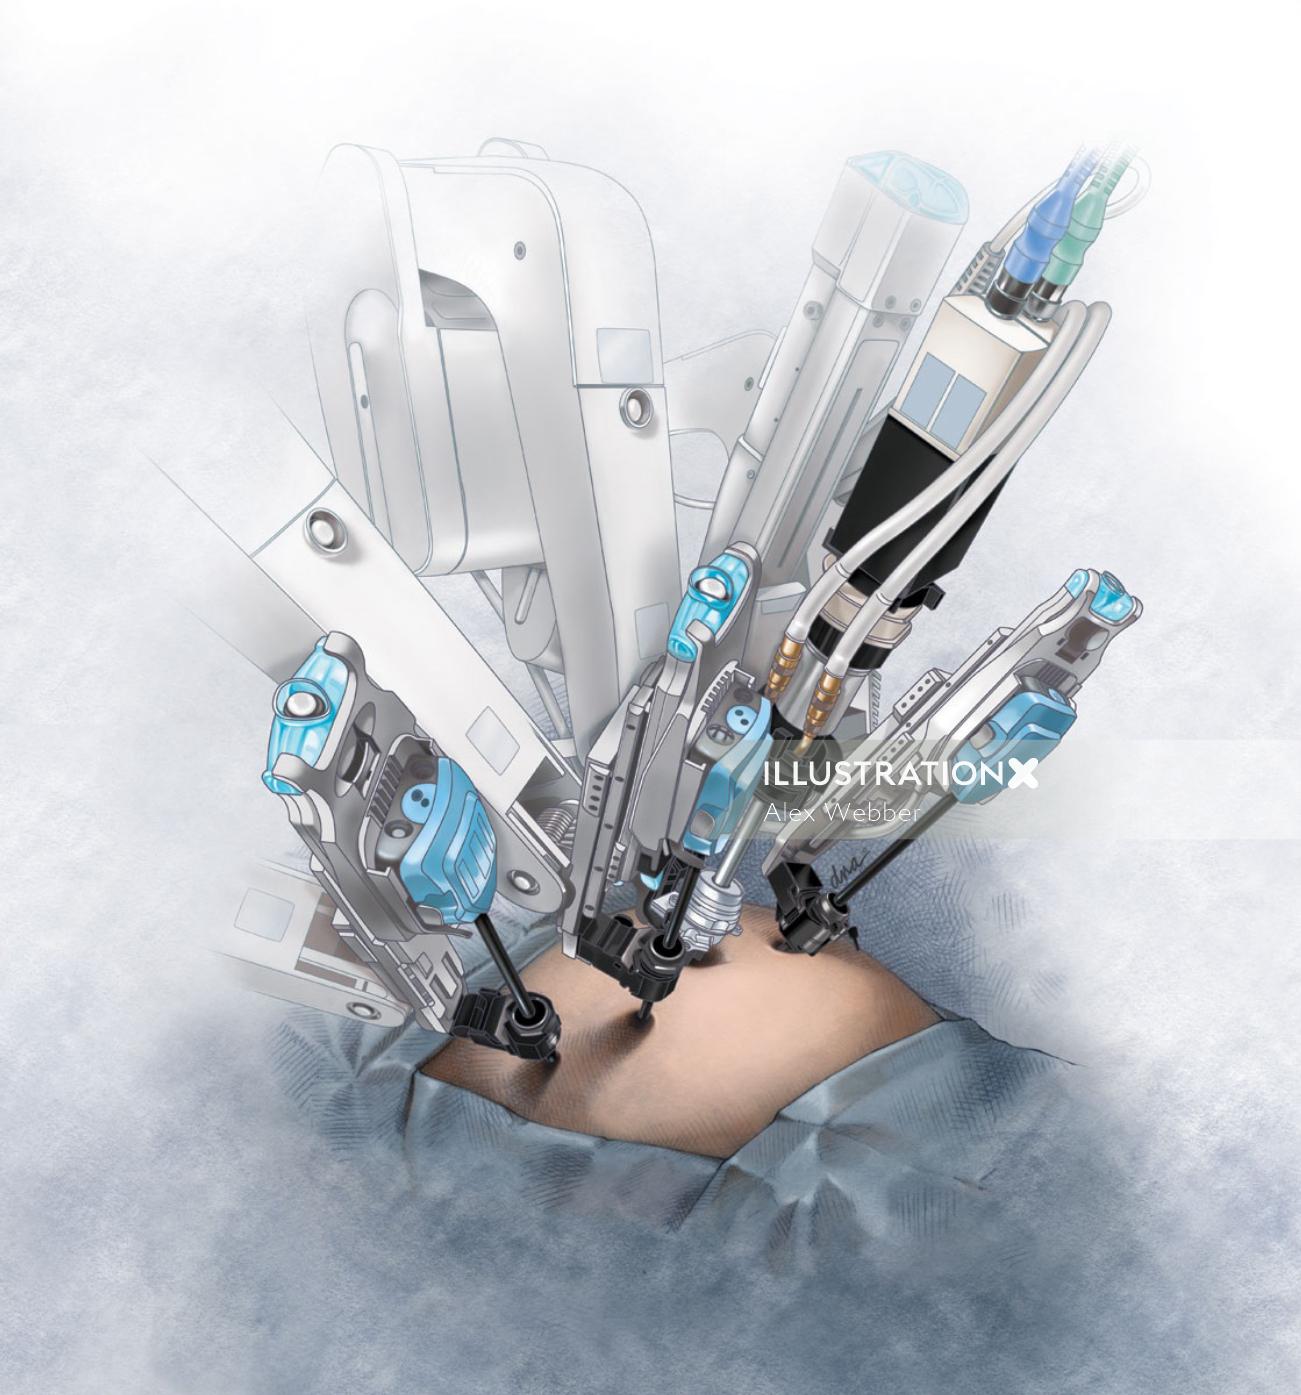 Ilustração de cirurgia robótica por AlexBaker